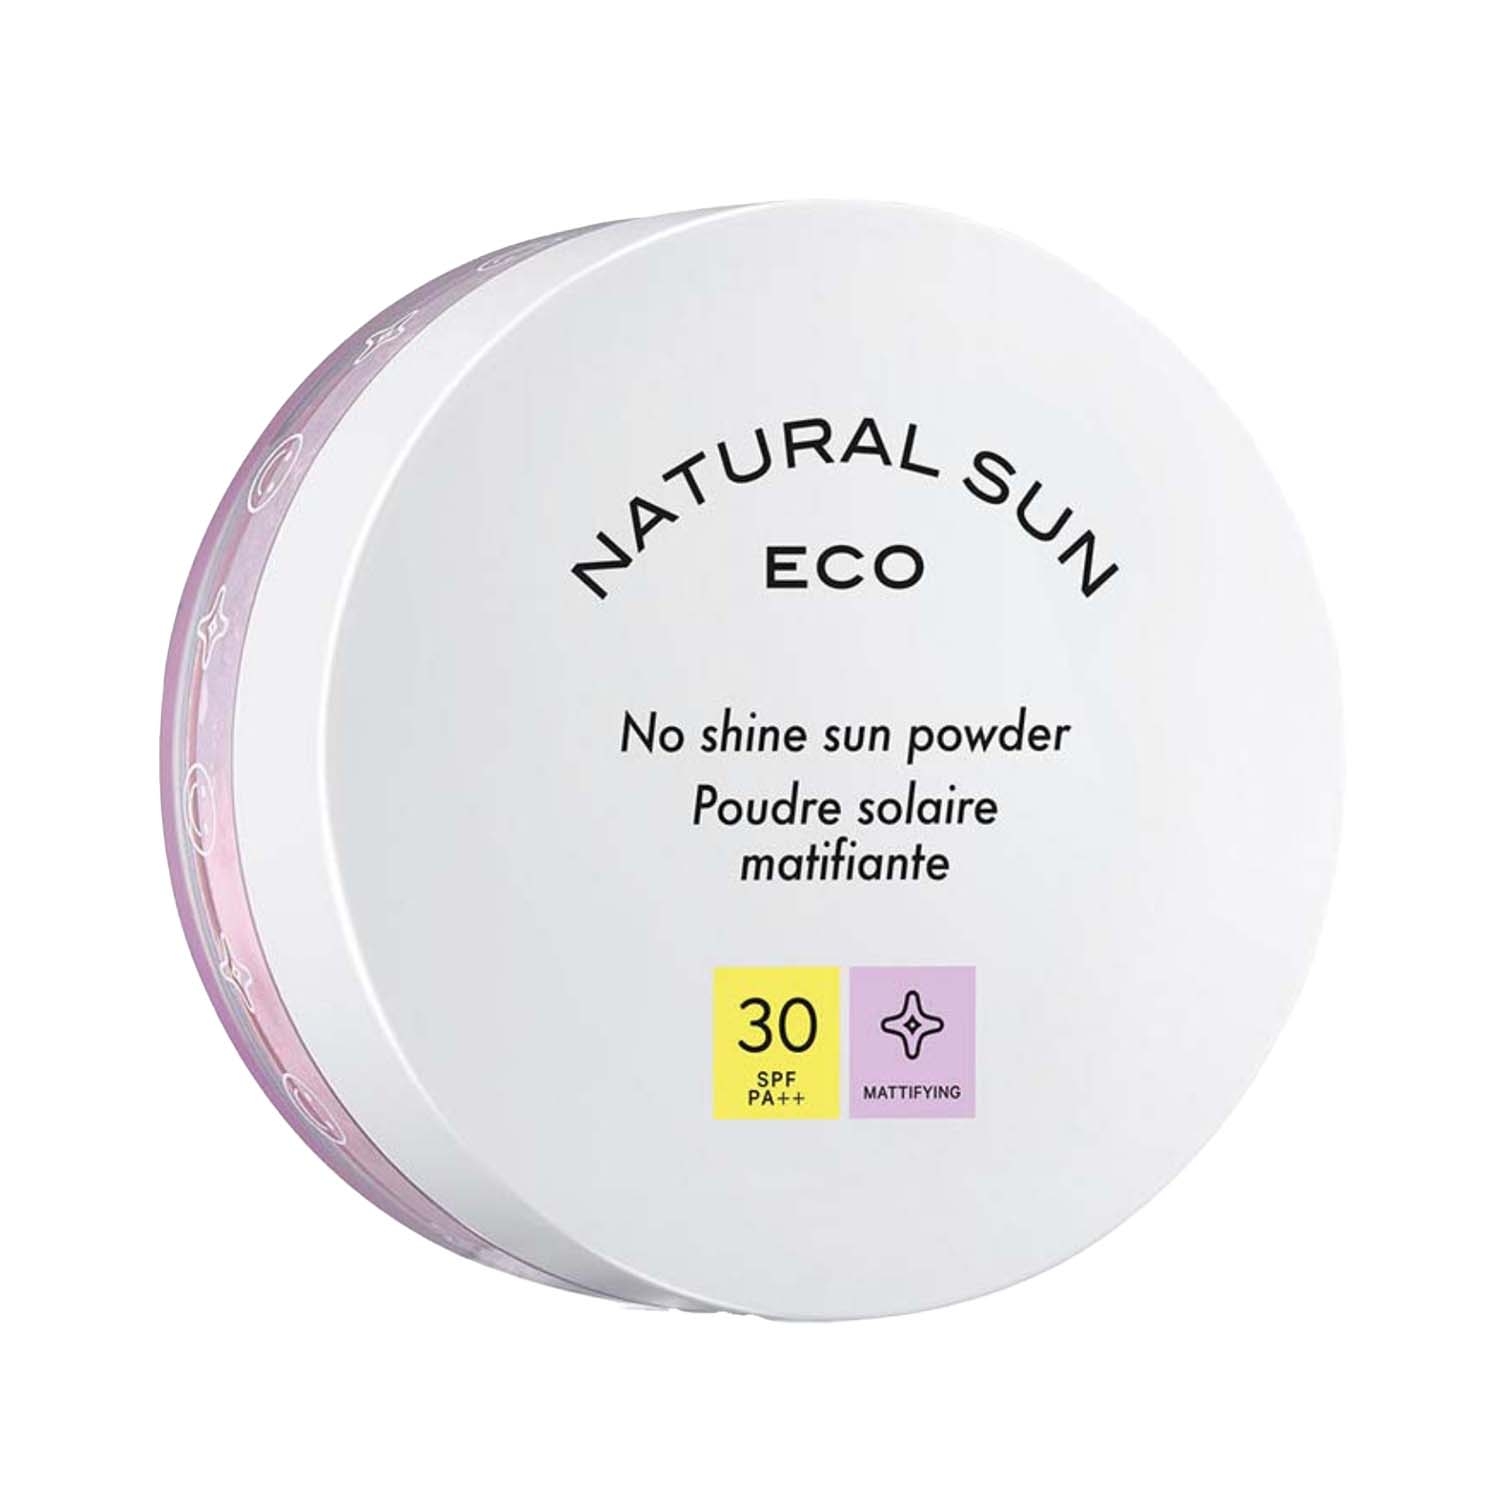 The Face Shop Naturalsun Eco No Shine SPF 30+ Sun Powder (13g)